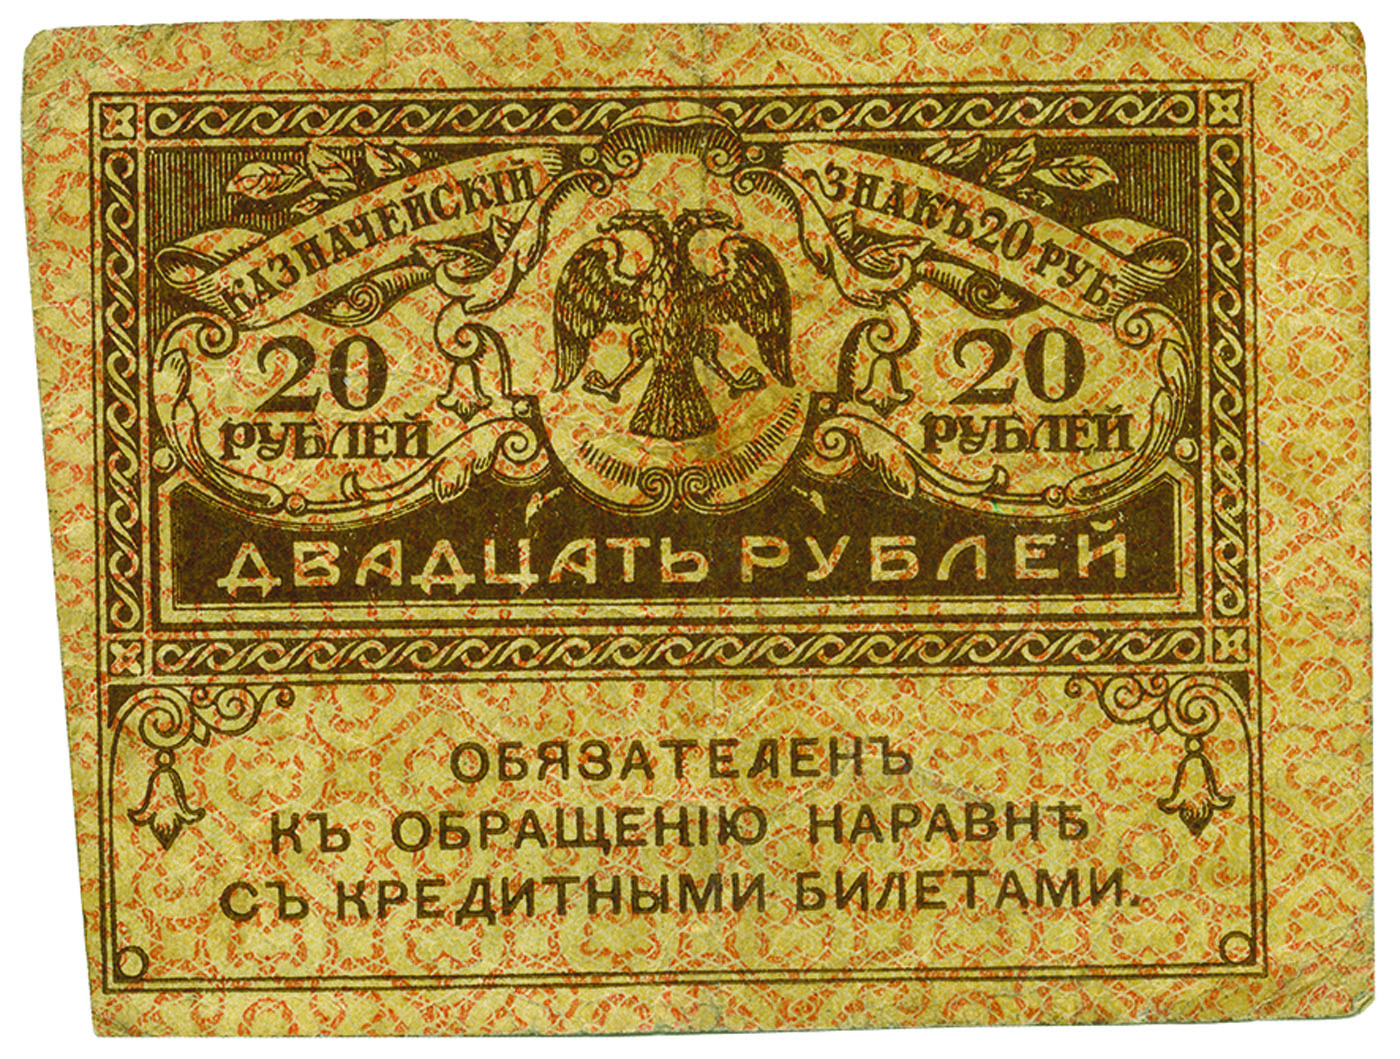 20 рублей «керенки», 1917 г.